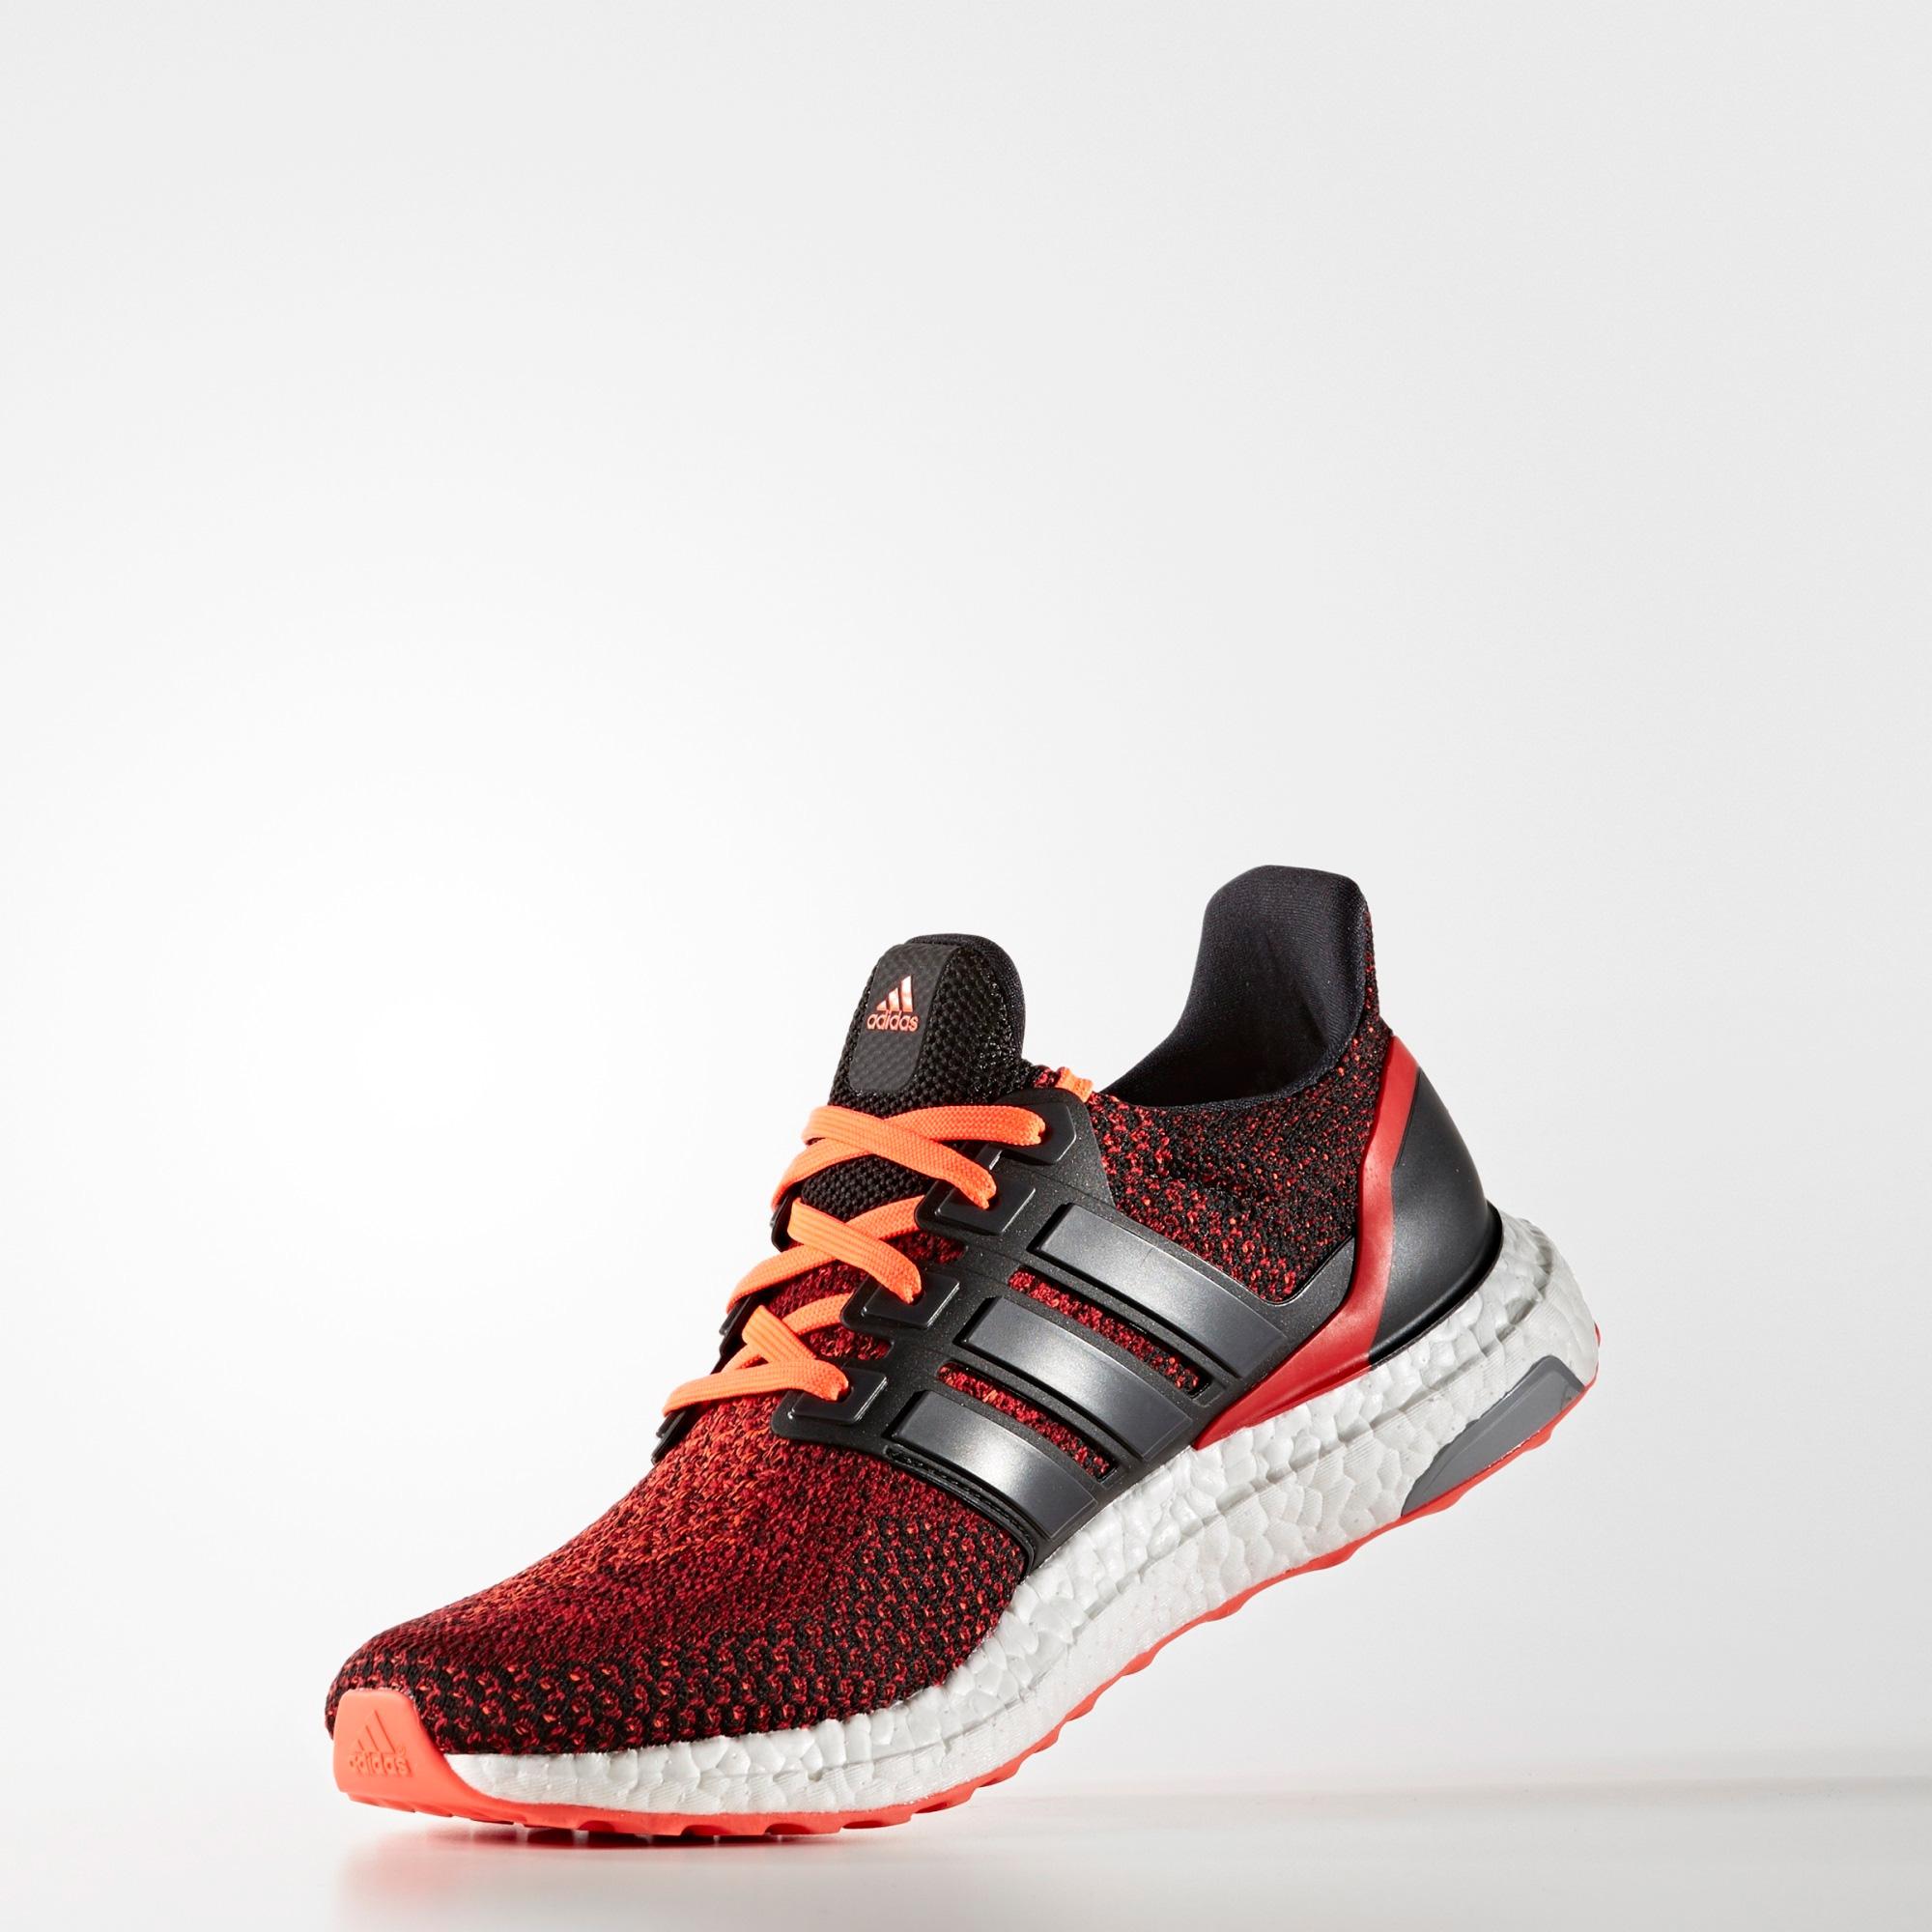 Adidas Mens Ultra Boost Running Shoes - Solar Red/Black - Tennisnuts.com